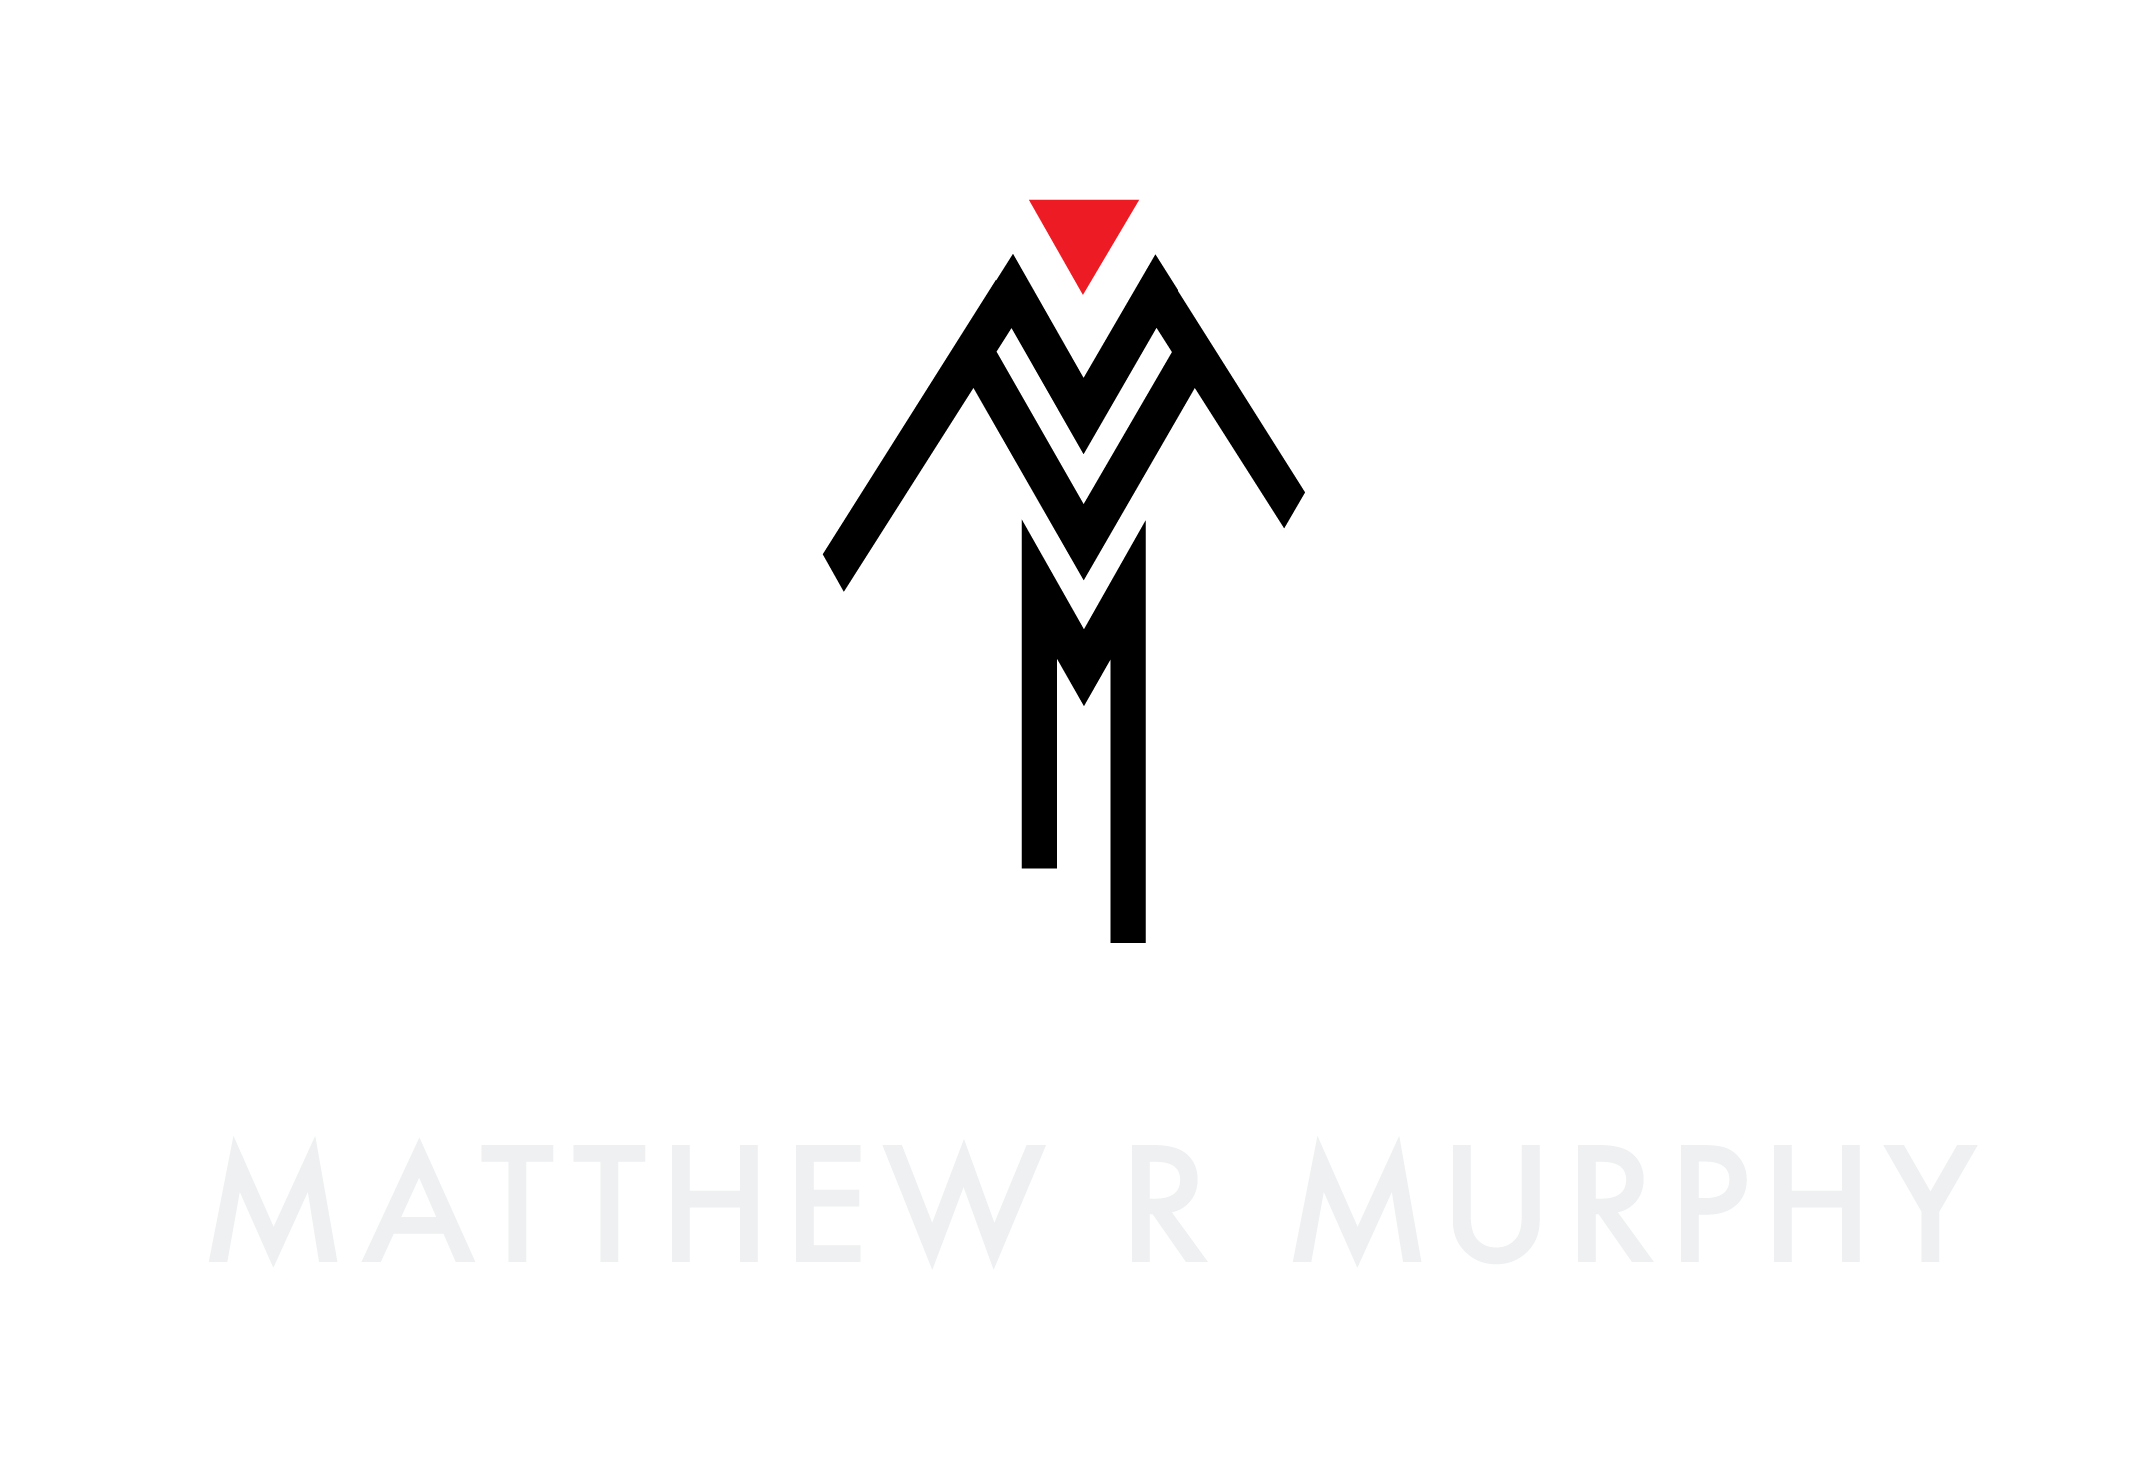 Matthew R Murphy